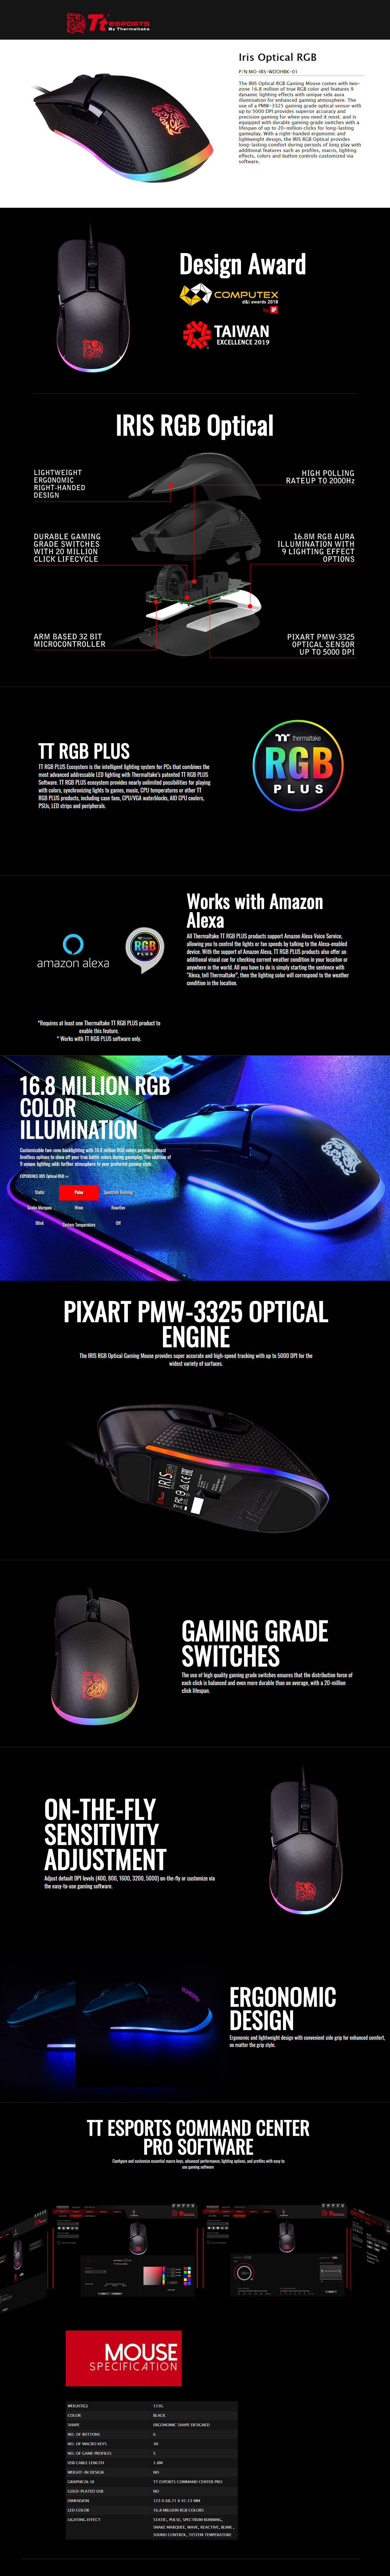  Buy Online Thermaltake Iris Optical RGB Gaming Mouse (MO-IRS-WDOHBK-01)